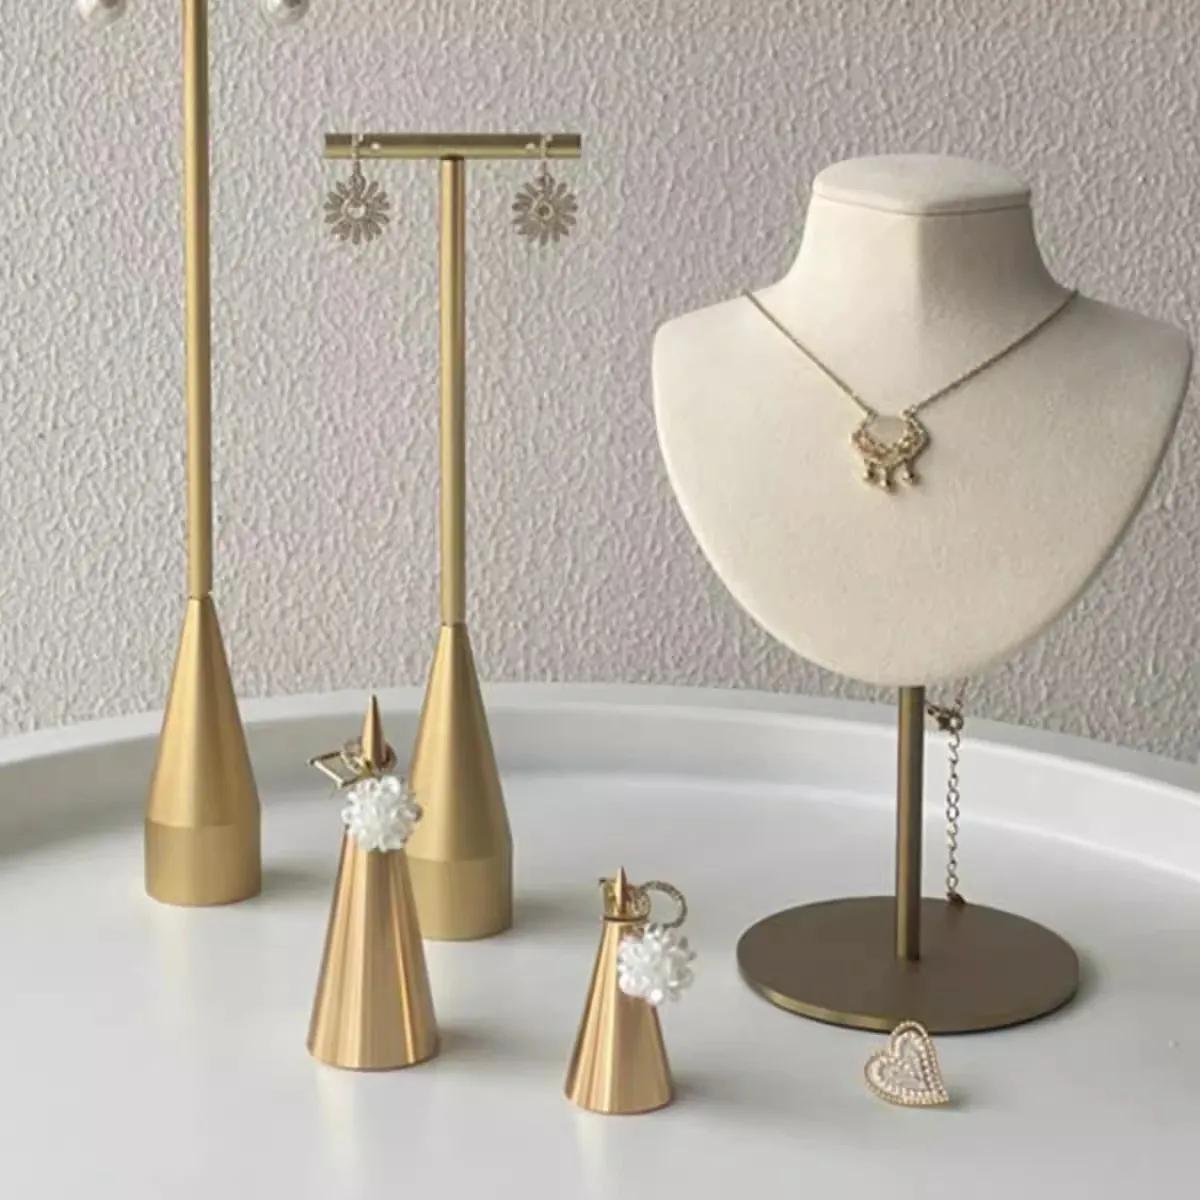 Nuovo design moda anello in metallo espositore anelli fotografia oggetti di scena in moda gioielli espositore per gioielleria